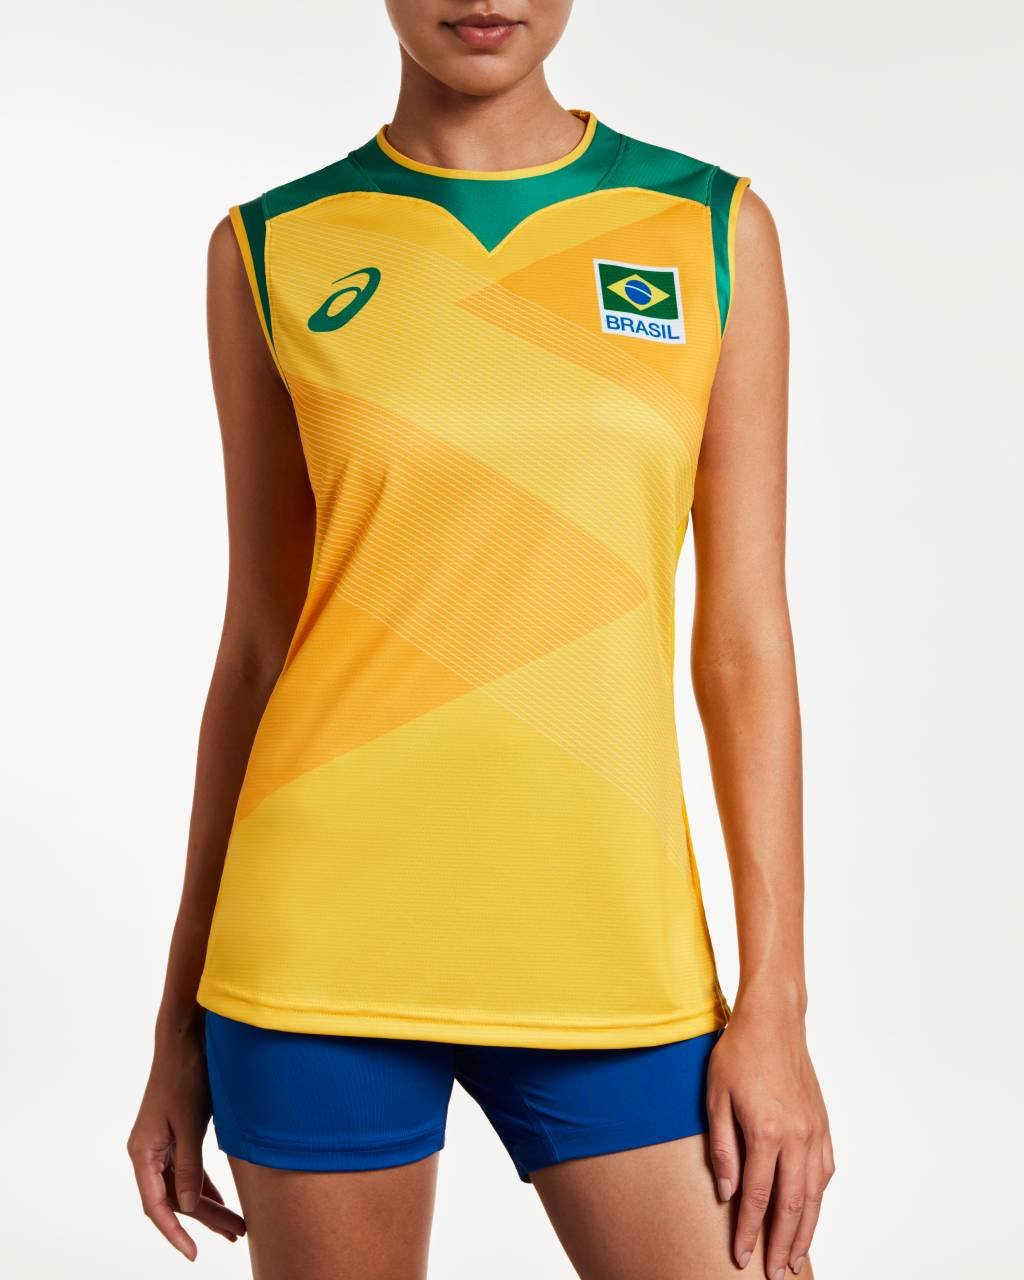 ASICS e CBV apresentam uniformes que vôlei do Brasil vestirá no Japão